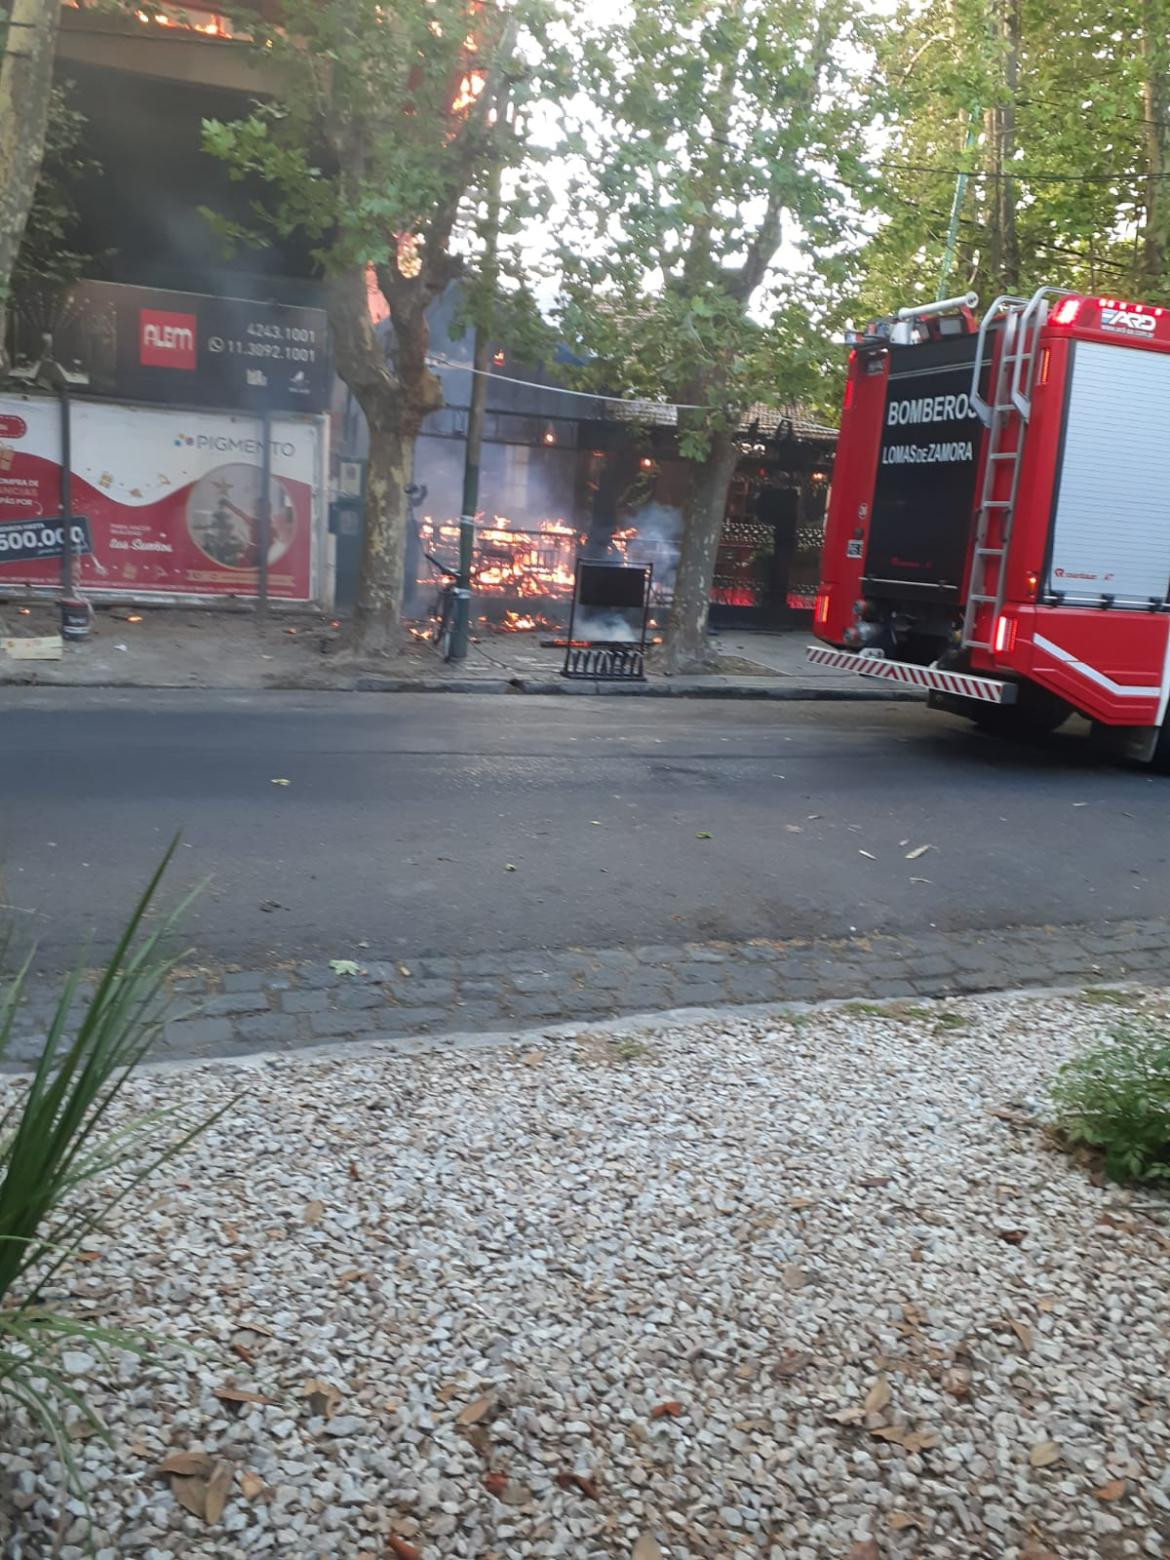 Incendio en un restaurante de Lomas de Zamora